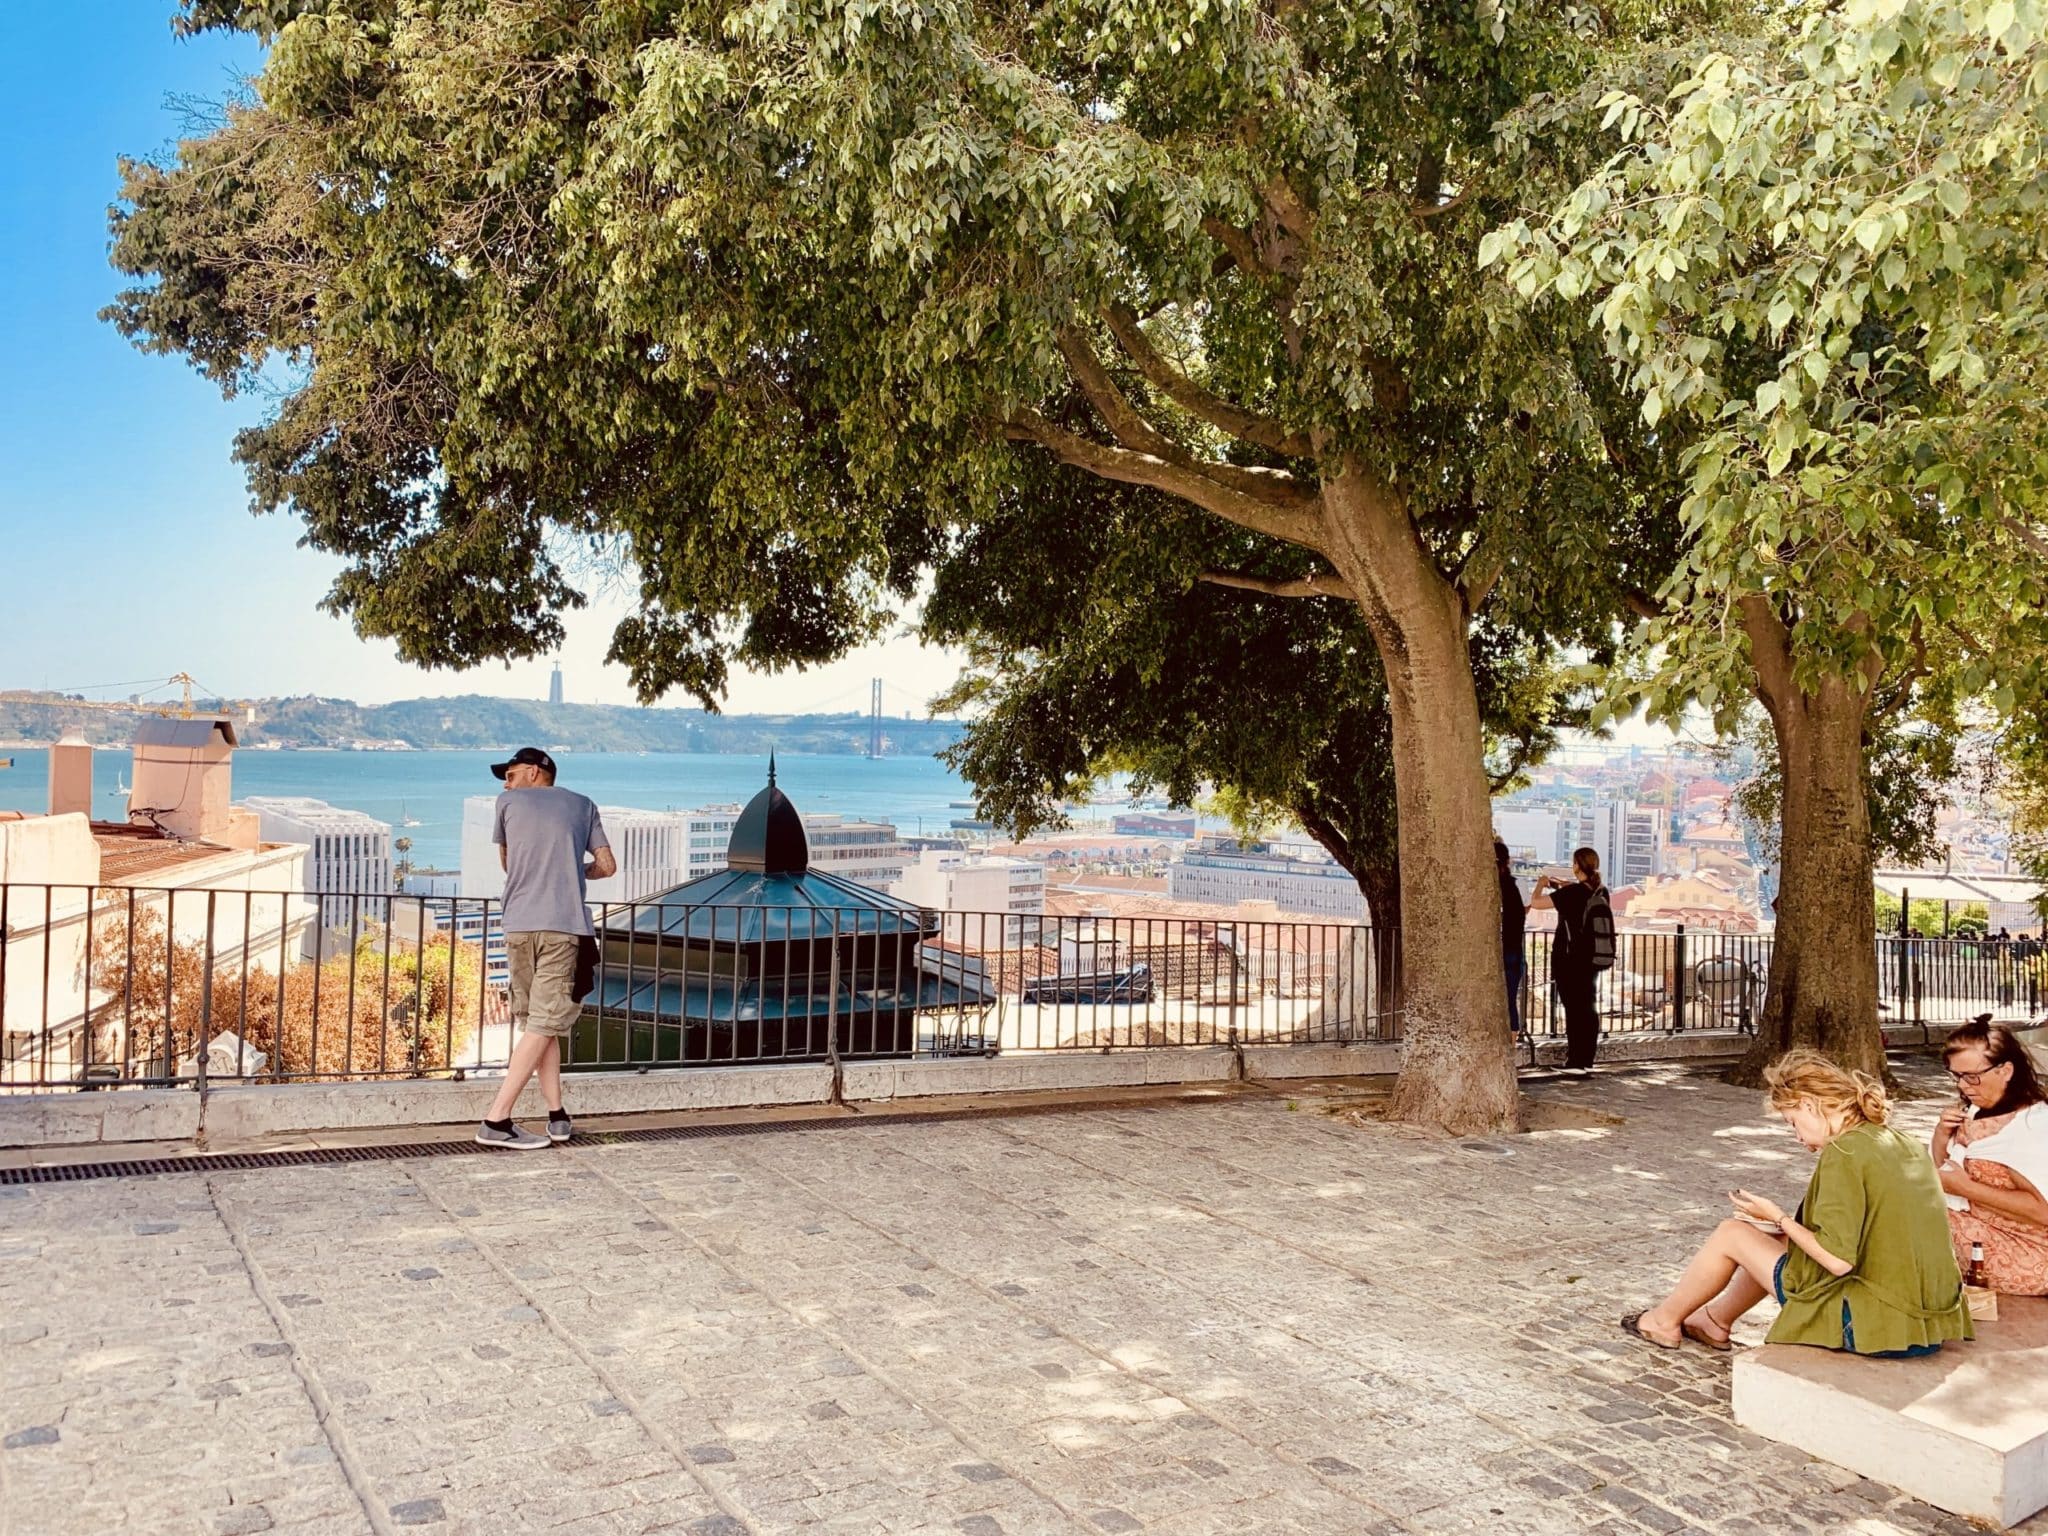 Aussichtspunkte in Lissabon